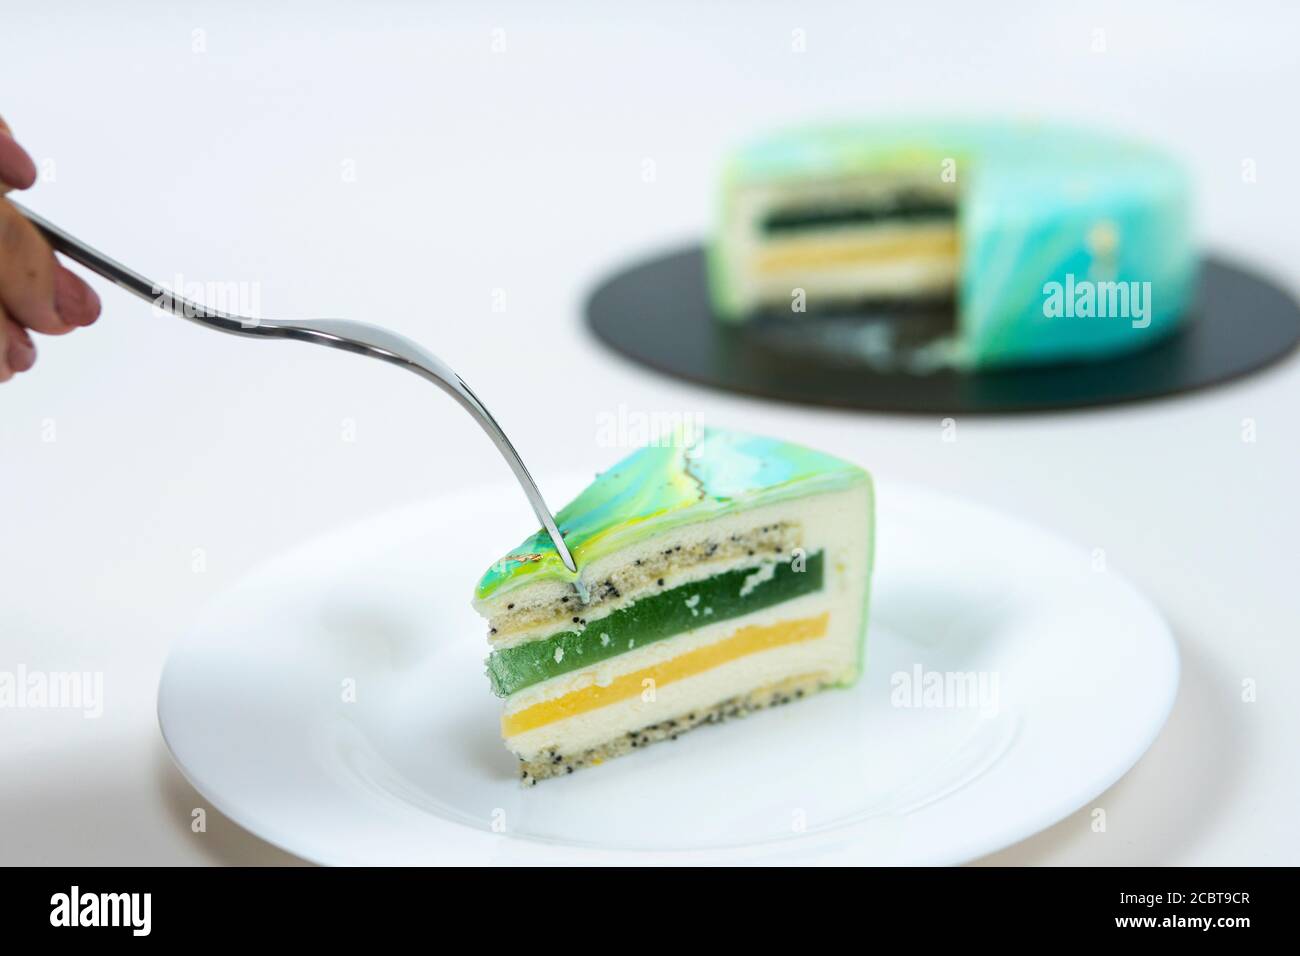 Nahaufnahme Essen Scheibe Mousse Kuchen bedeckt blau und grün Spiegelglasur. Französisches Dessert. Gefrorener Spiegel Sahnehäubchen auf dem Kuchen. Backen und Süßwaren Co Stockfoto